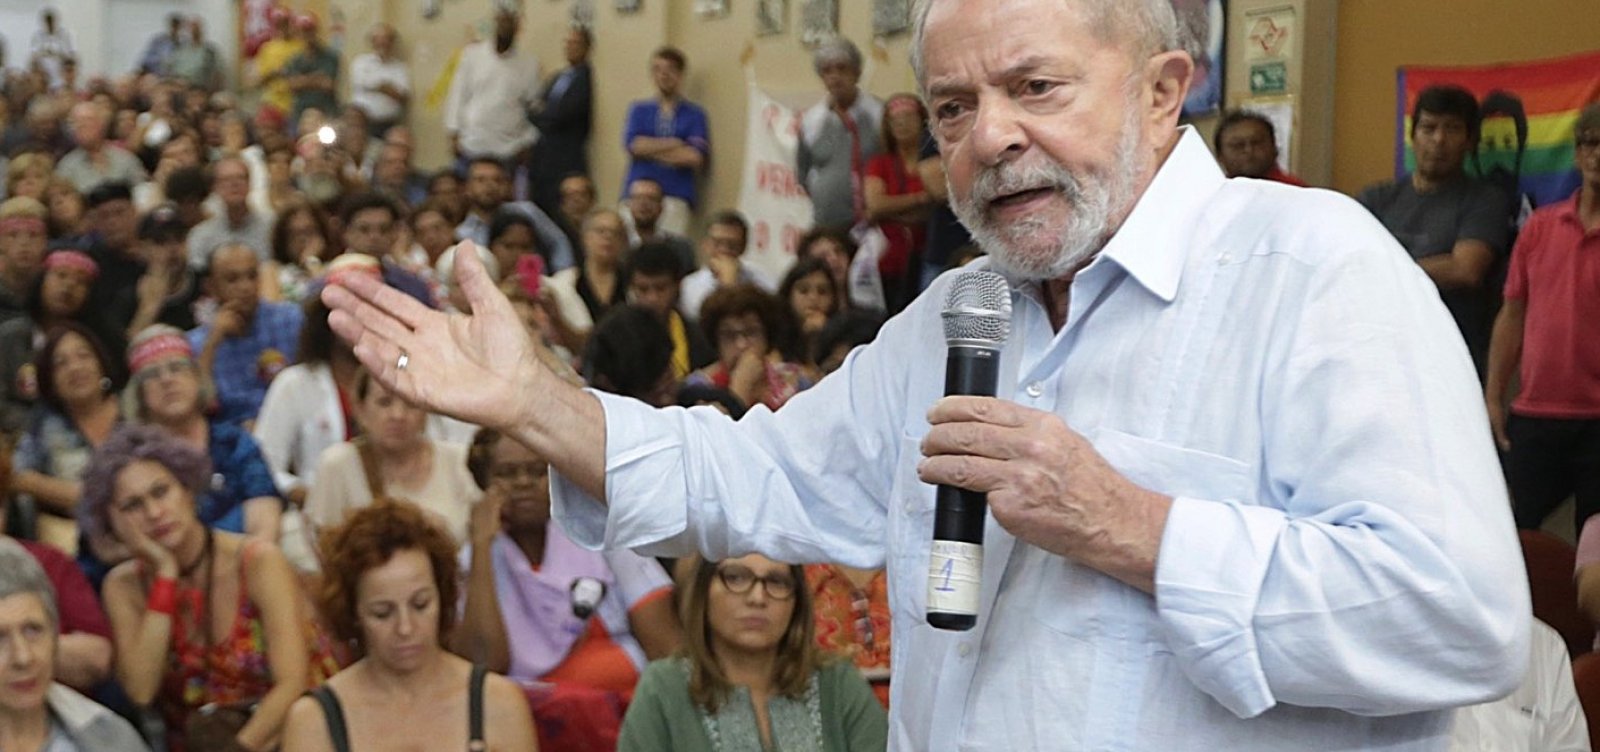 'Essa gente não suporta a ascensão social dos mais pobres', diz Lula sobre Guedes